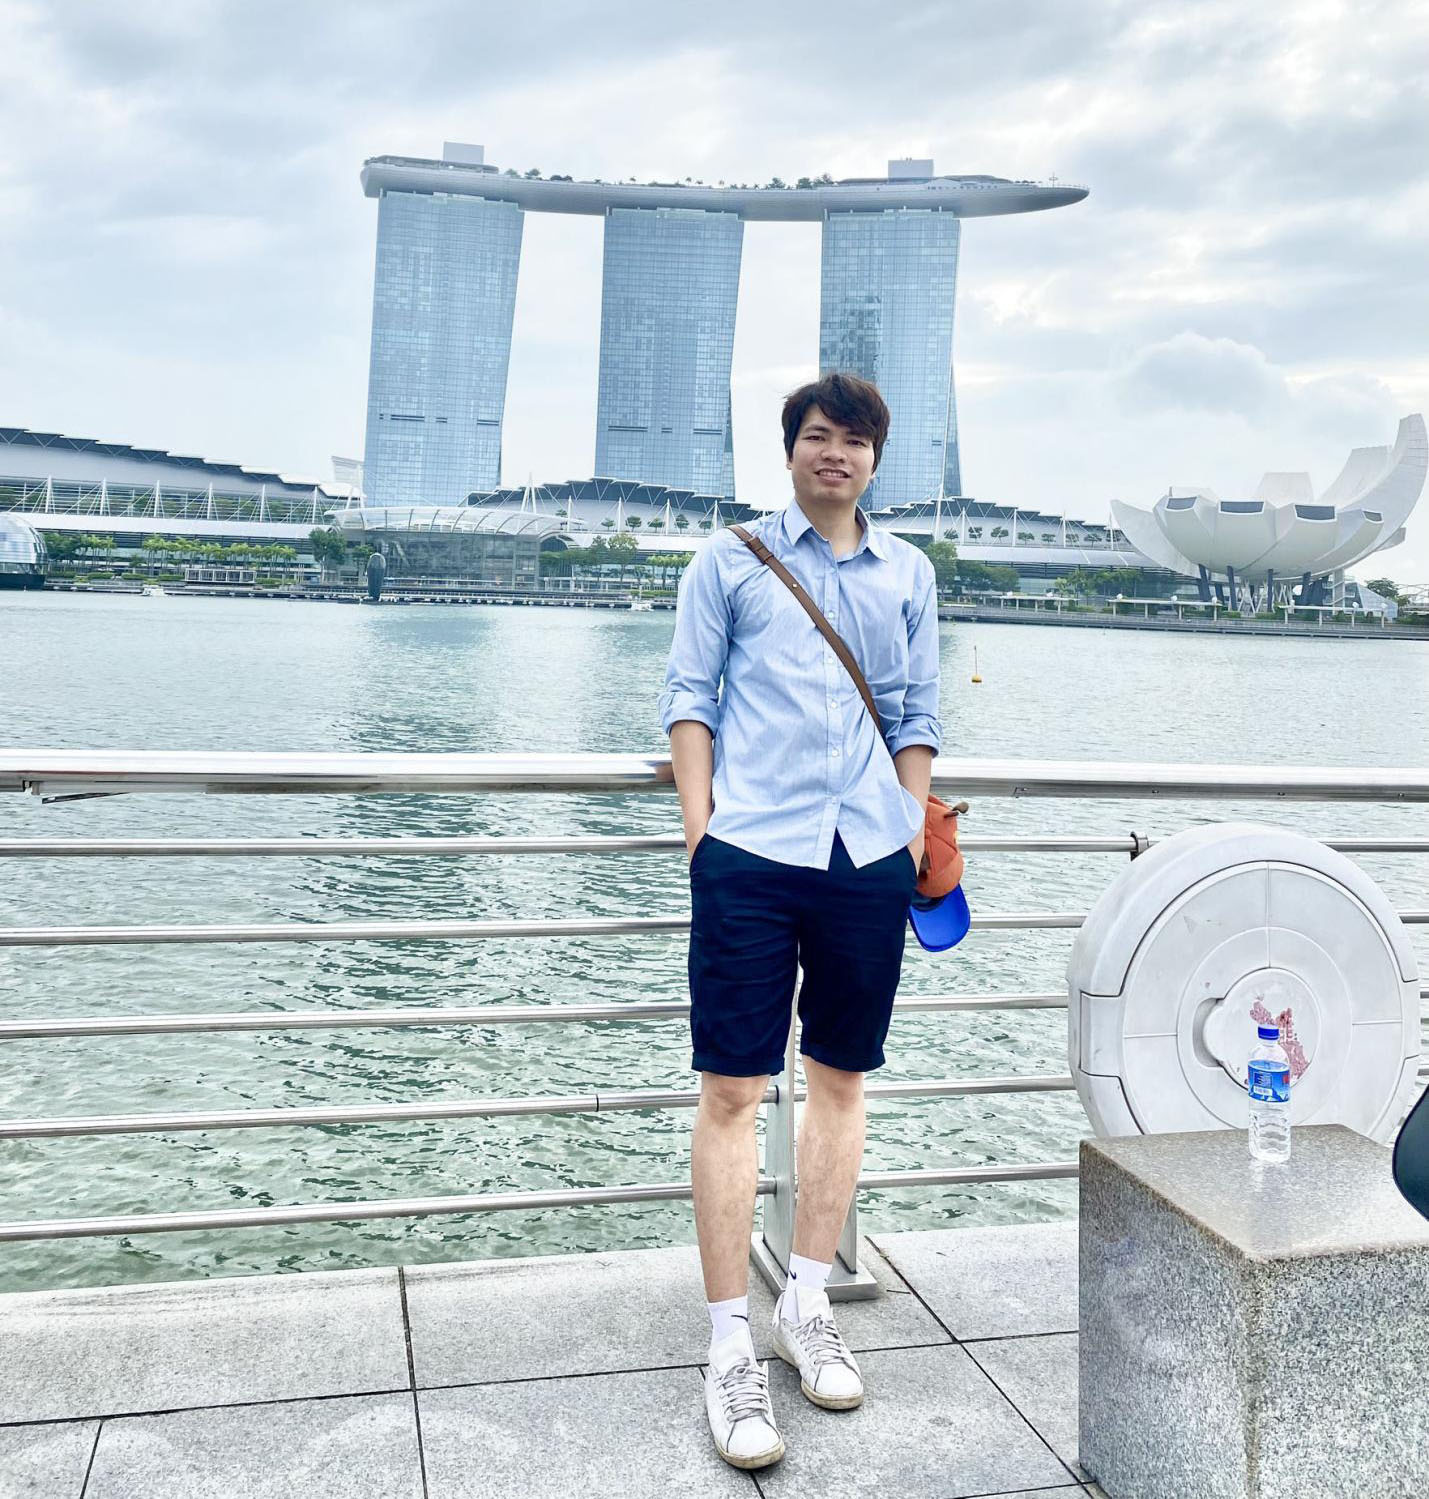 Cựu sinh viên Nguyễn Văn Hưng trong chuyến du lịch tại Singapore 